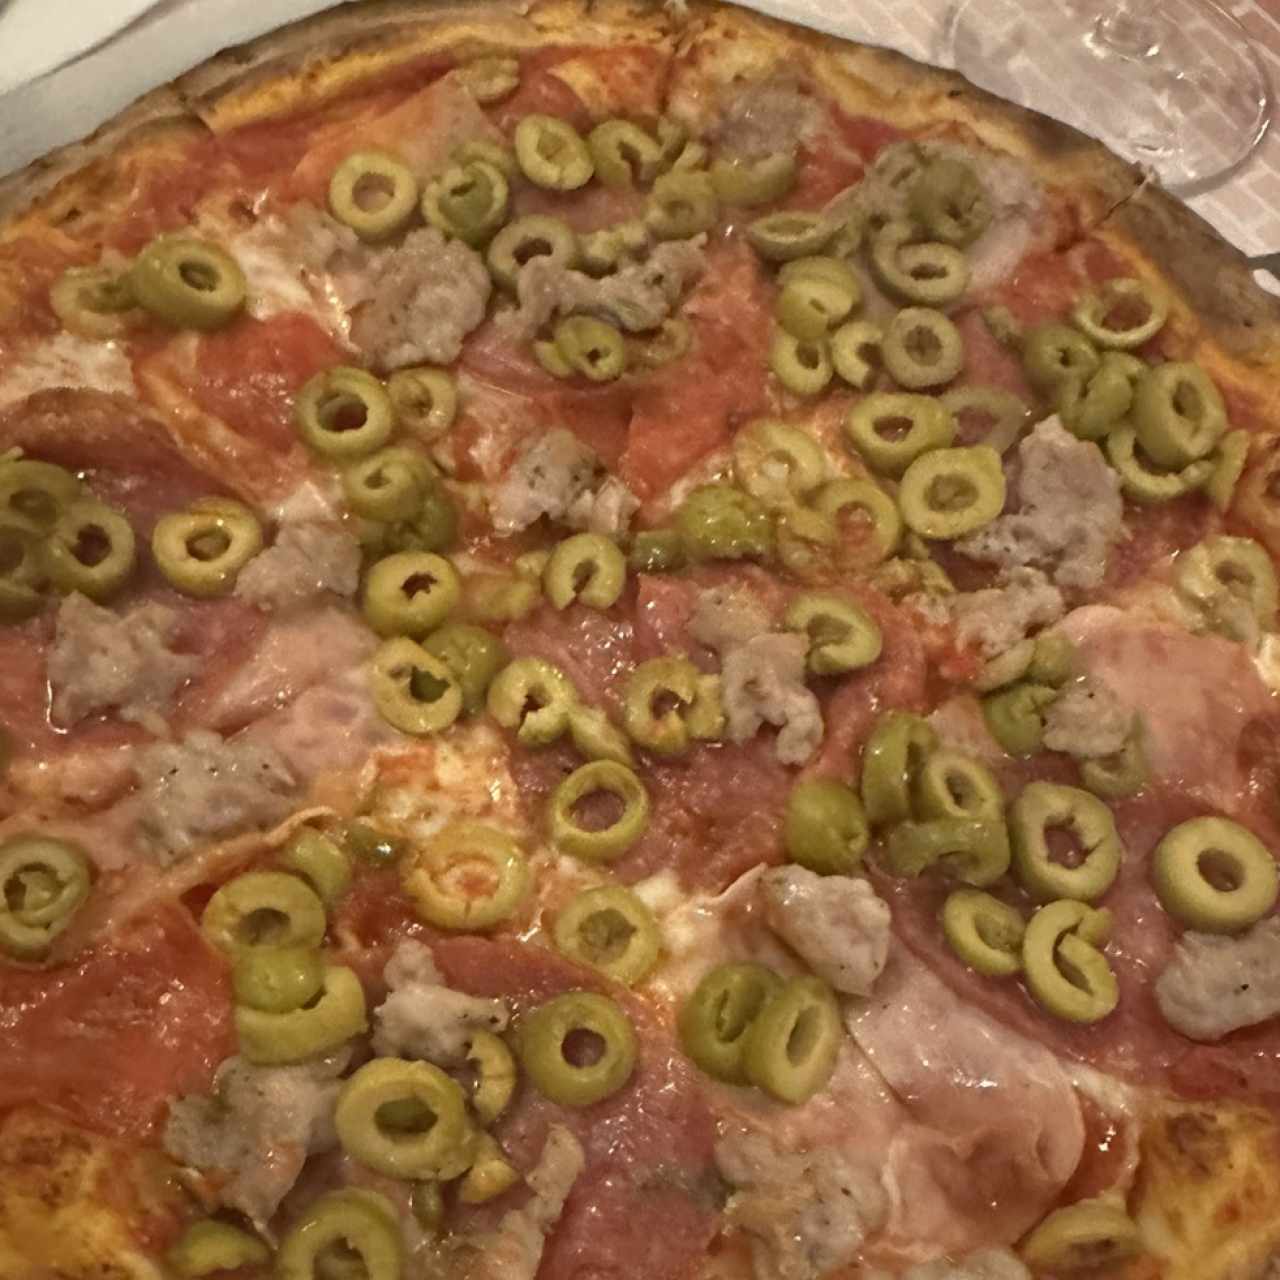 Pizza Al Vecchio Forno -Tamaño individual